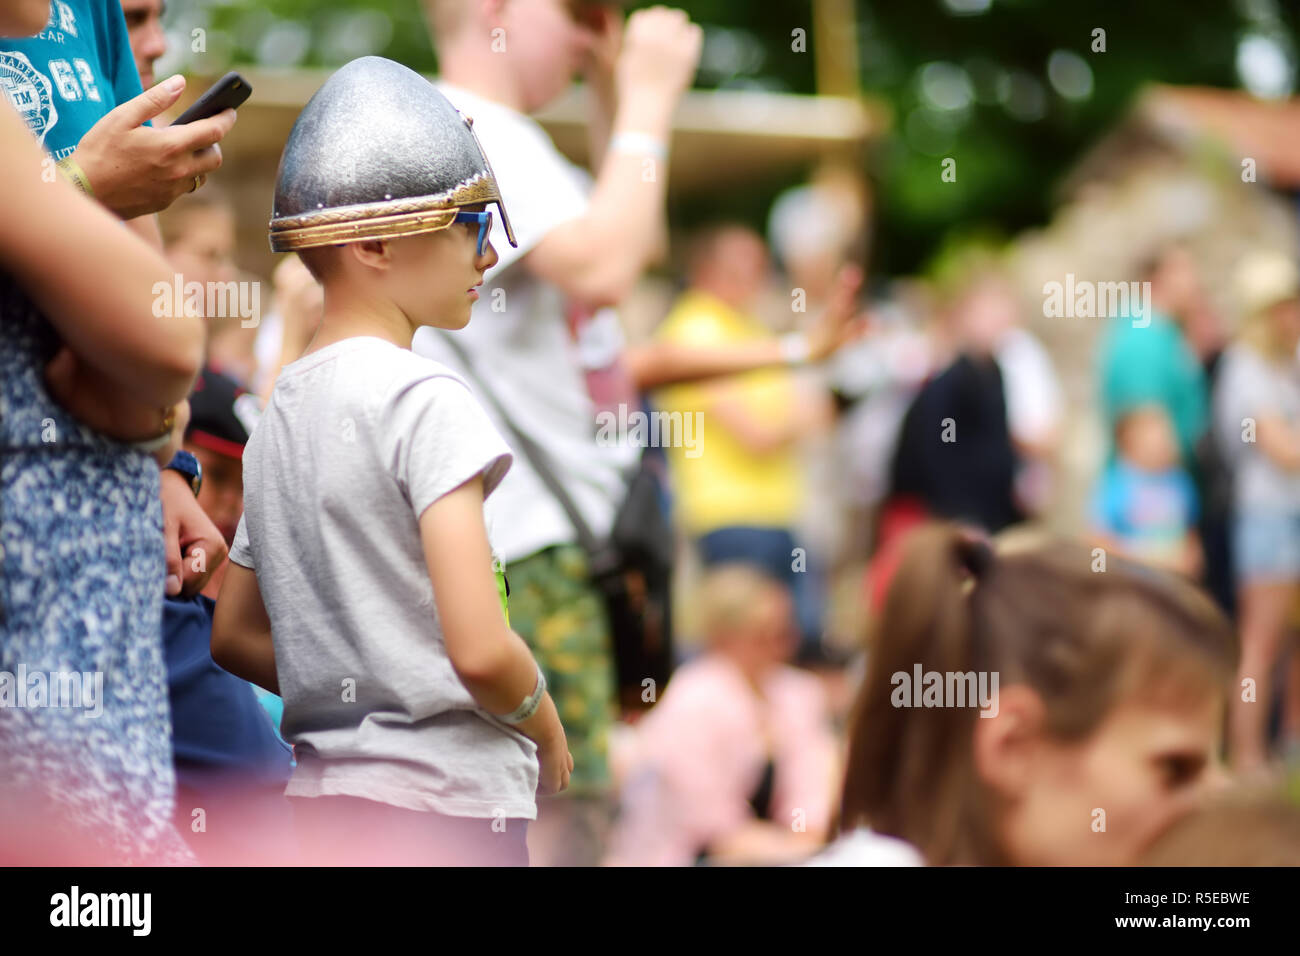 TRAKAI, Litauen - 16. JUNI 2018: Kinder und Erwachsene genießen historische Reenactment auf jährliche Mittelalter Festival, in Trakai Halbinsel Schloss statt. Visi Stockfoto